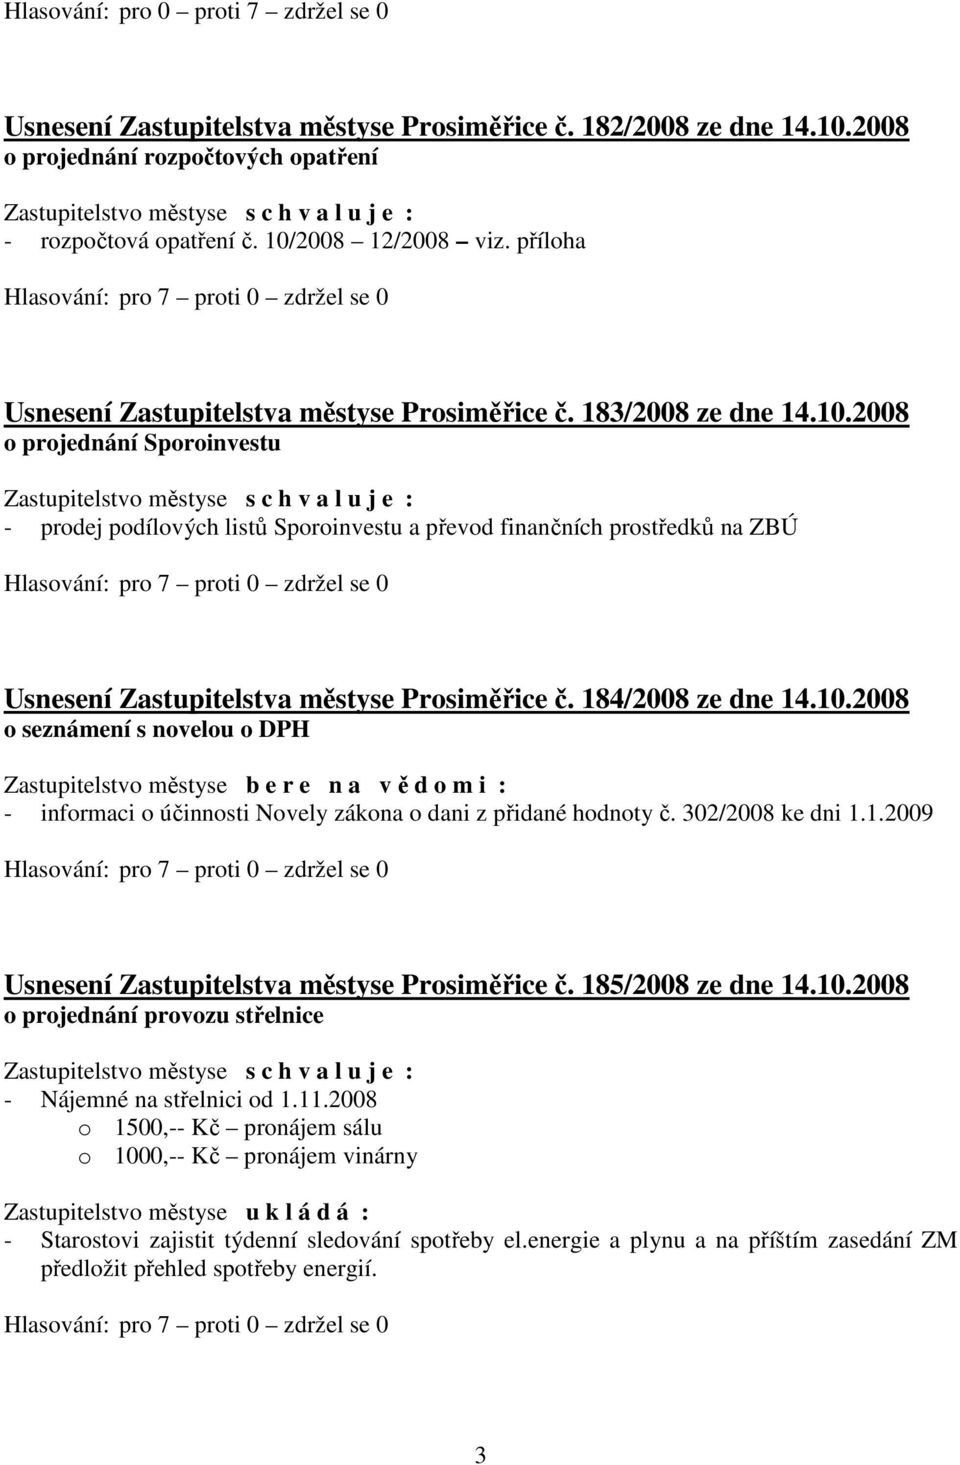 2008 o projednání Sporoinvestu - prodej podílových listů Sporoinvestu a převod finančních prostředků na ZBÚ Usnesení Zastupitelstva městyse Prosiměřice č. 184/2008 ze dne 14.10.